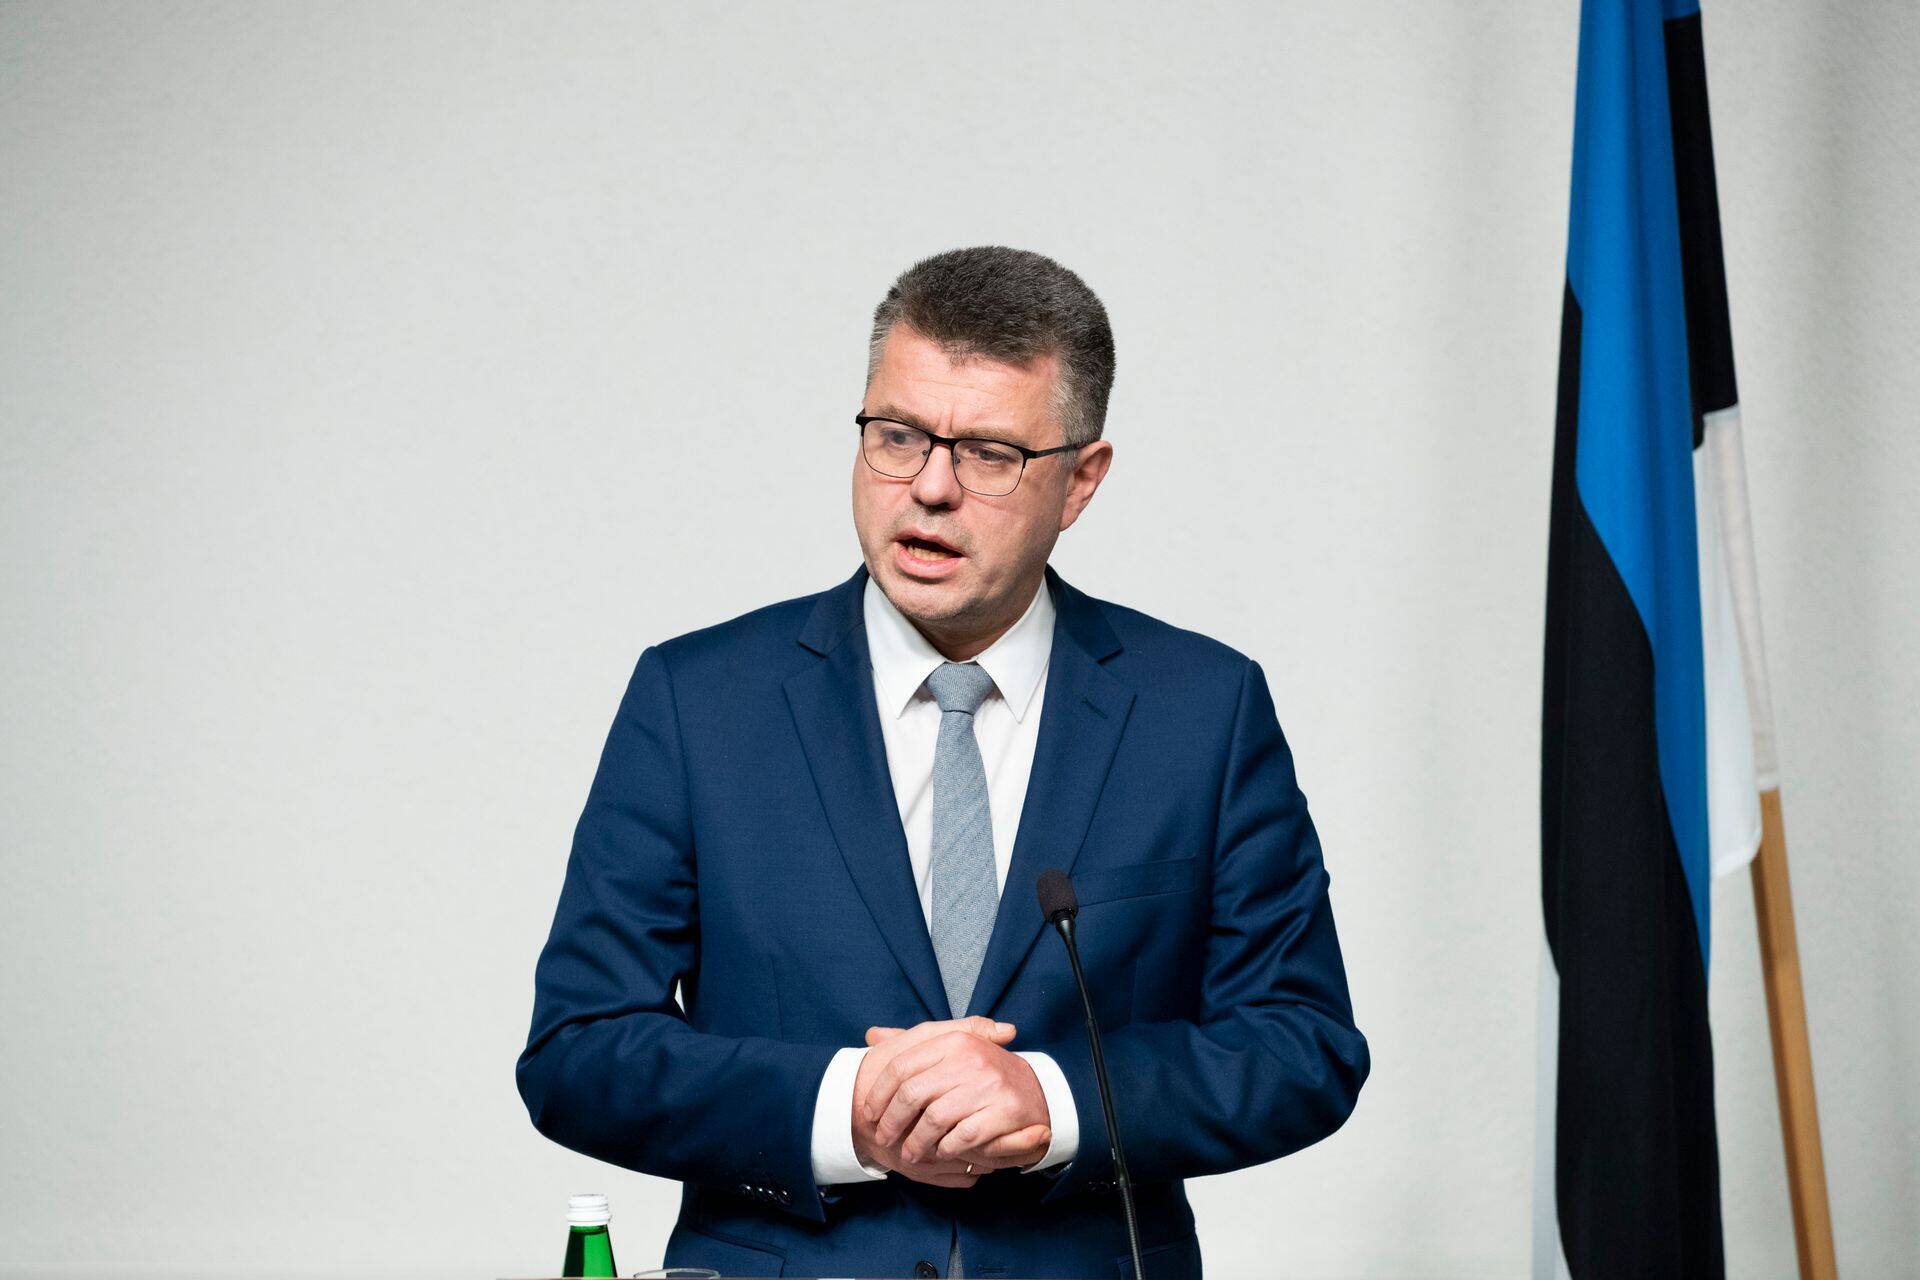 Riigieelarve kontrolli erikomisjoni esimees Urmas Reinsalu analüüsib raadiohommikus vabariigi presidendi kantselei rahaskandaali.